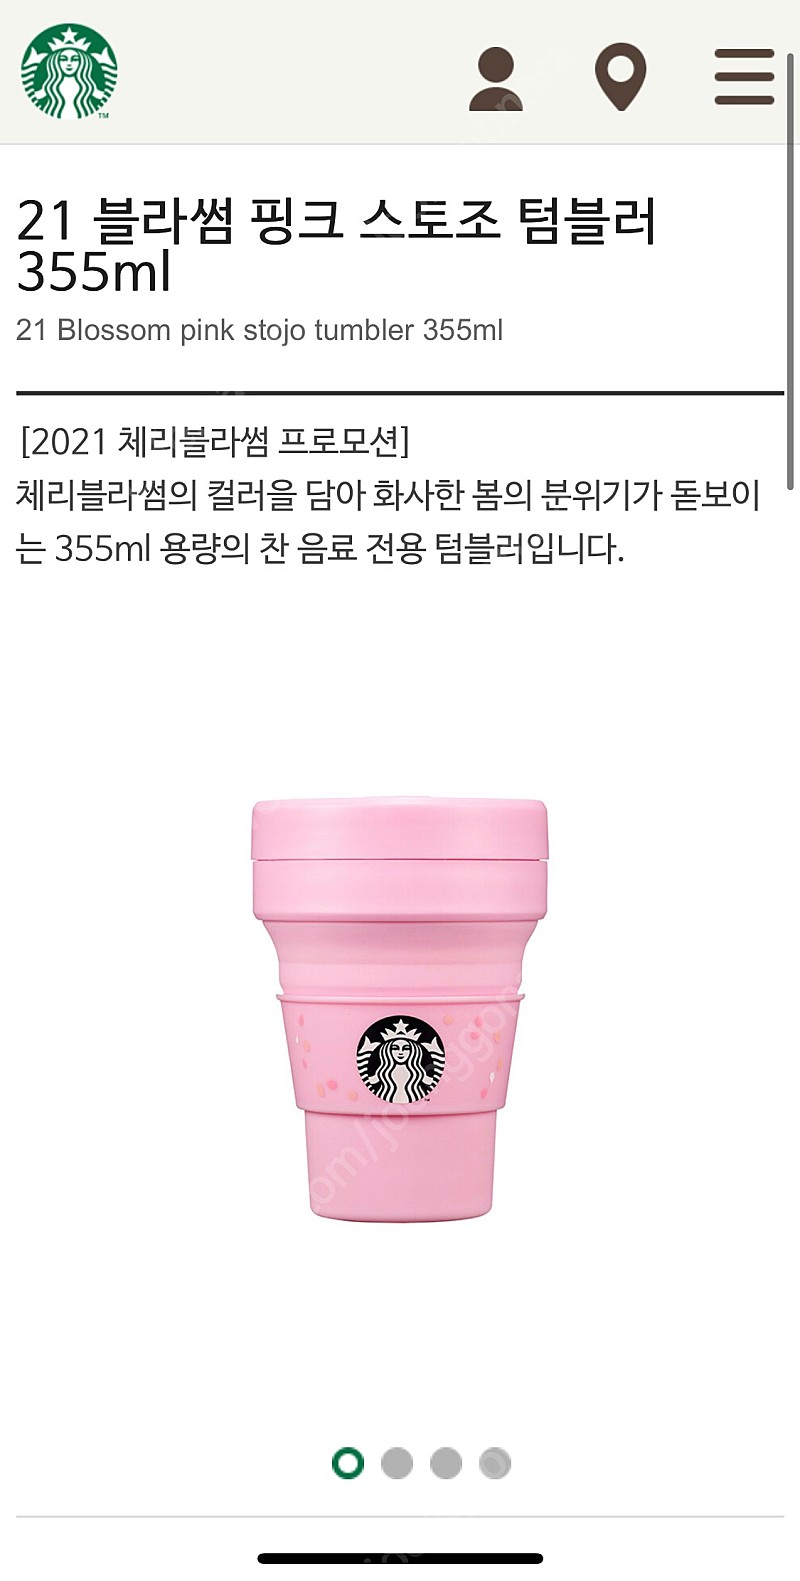 스타벅스 21 블라썸 핑크 스토조 텀블러 미개봉 새상품